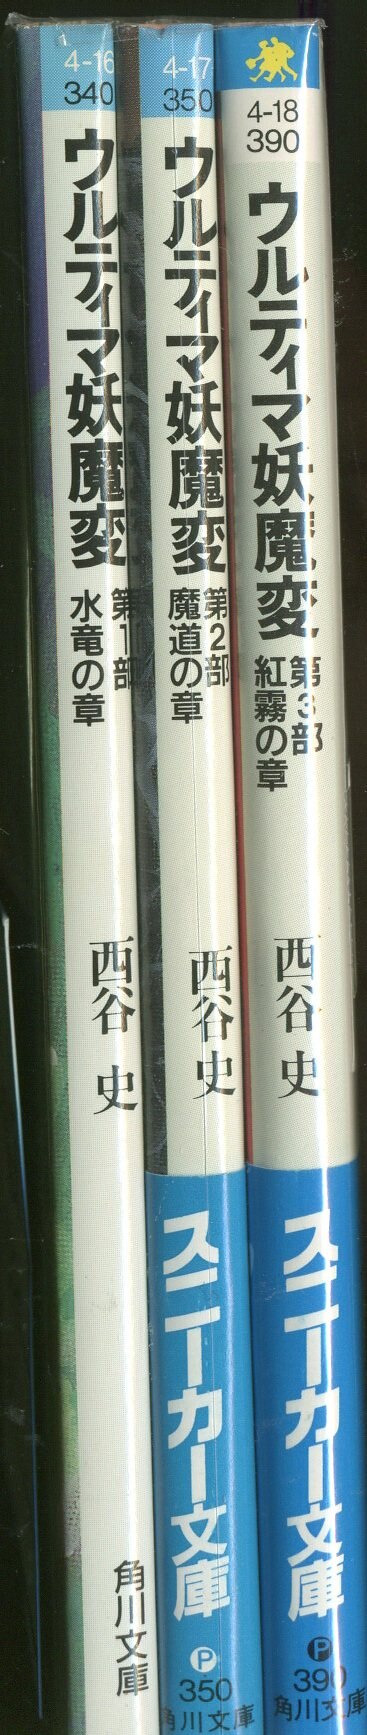 角川書店 スニーカー文庫 西谷史 ウルティマ妖魔変 全3巻セット セット